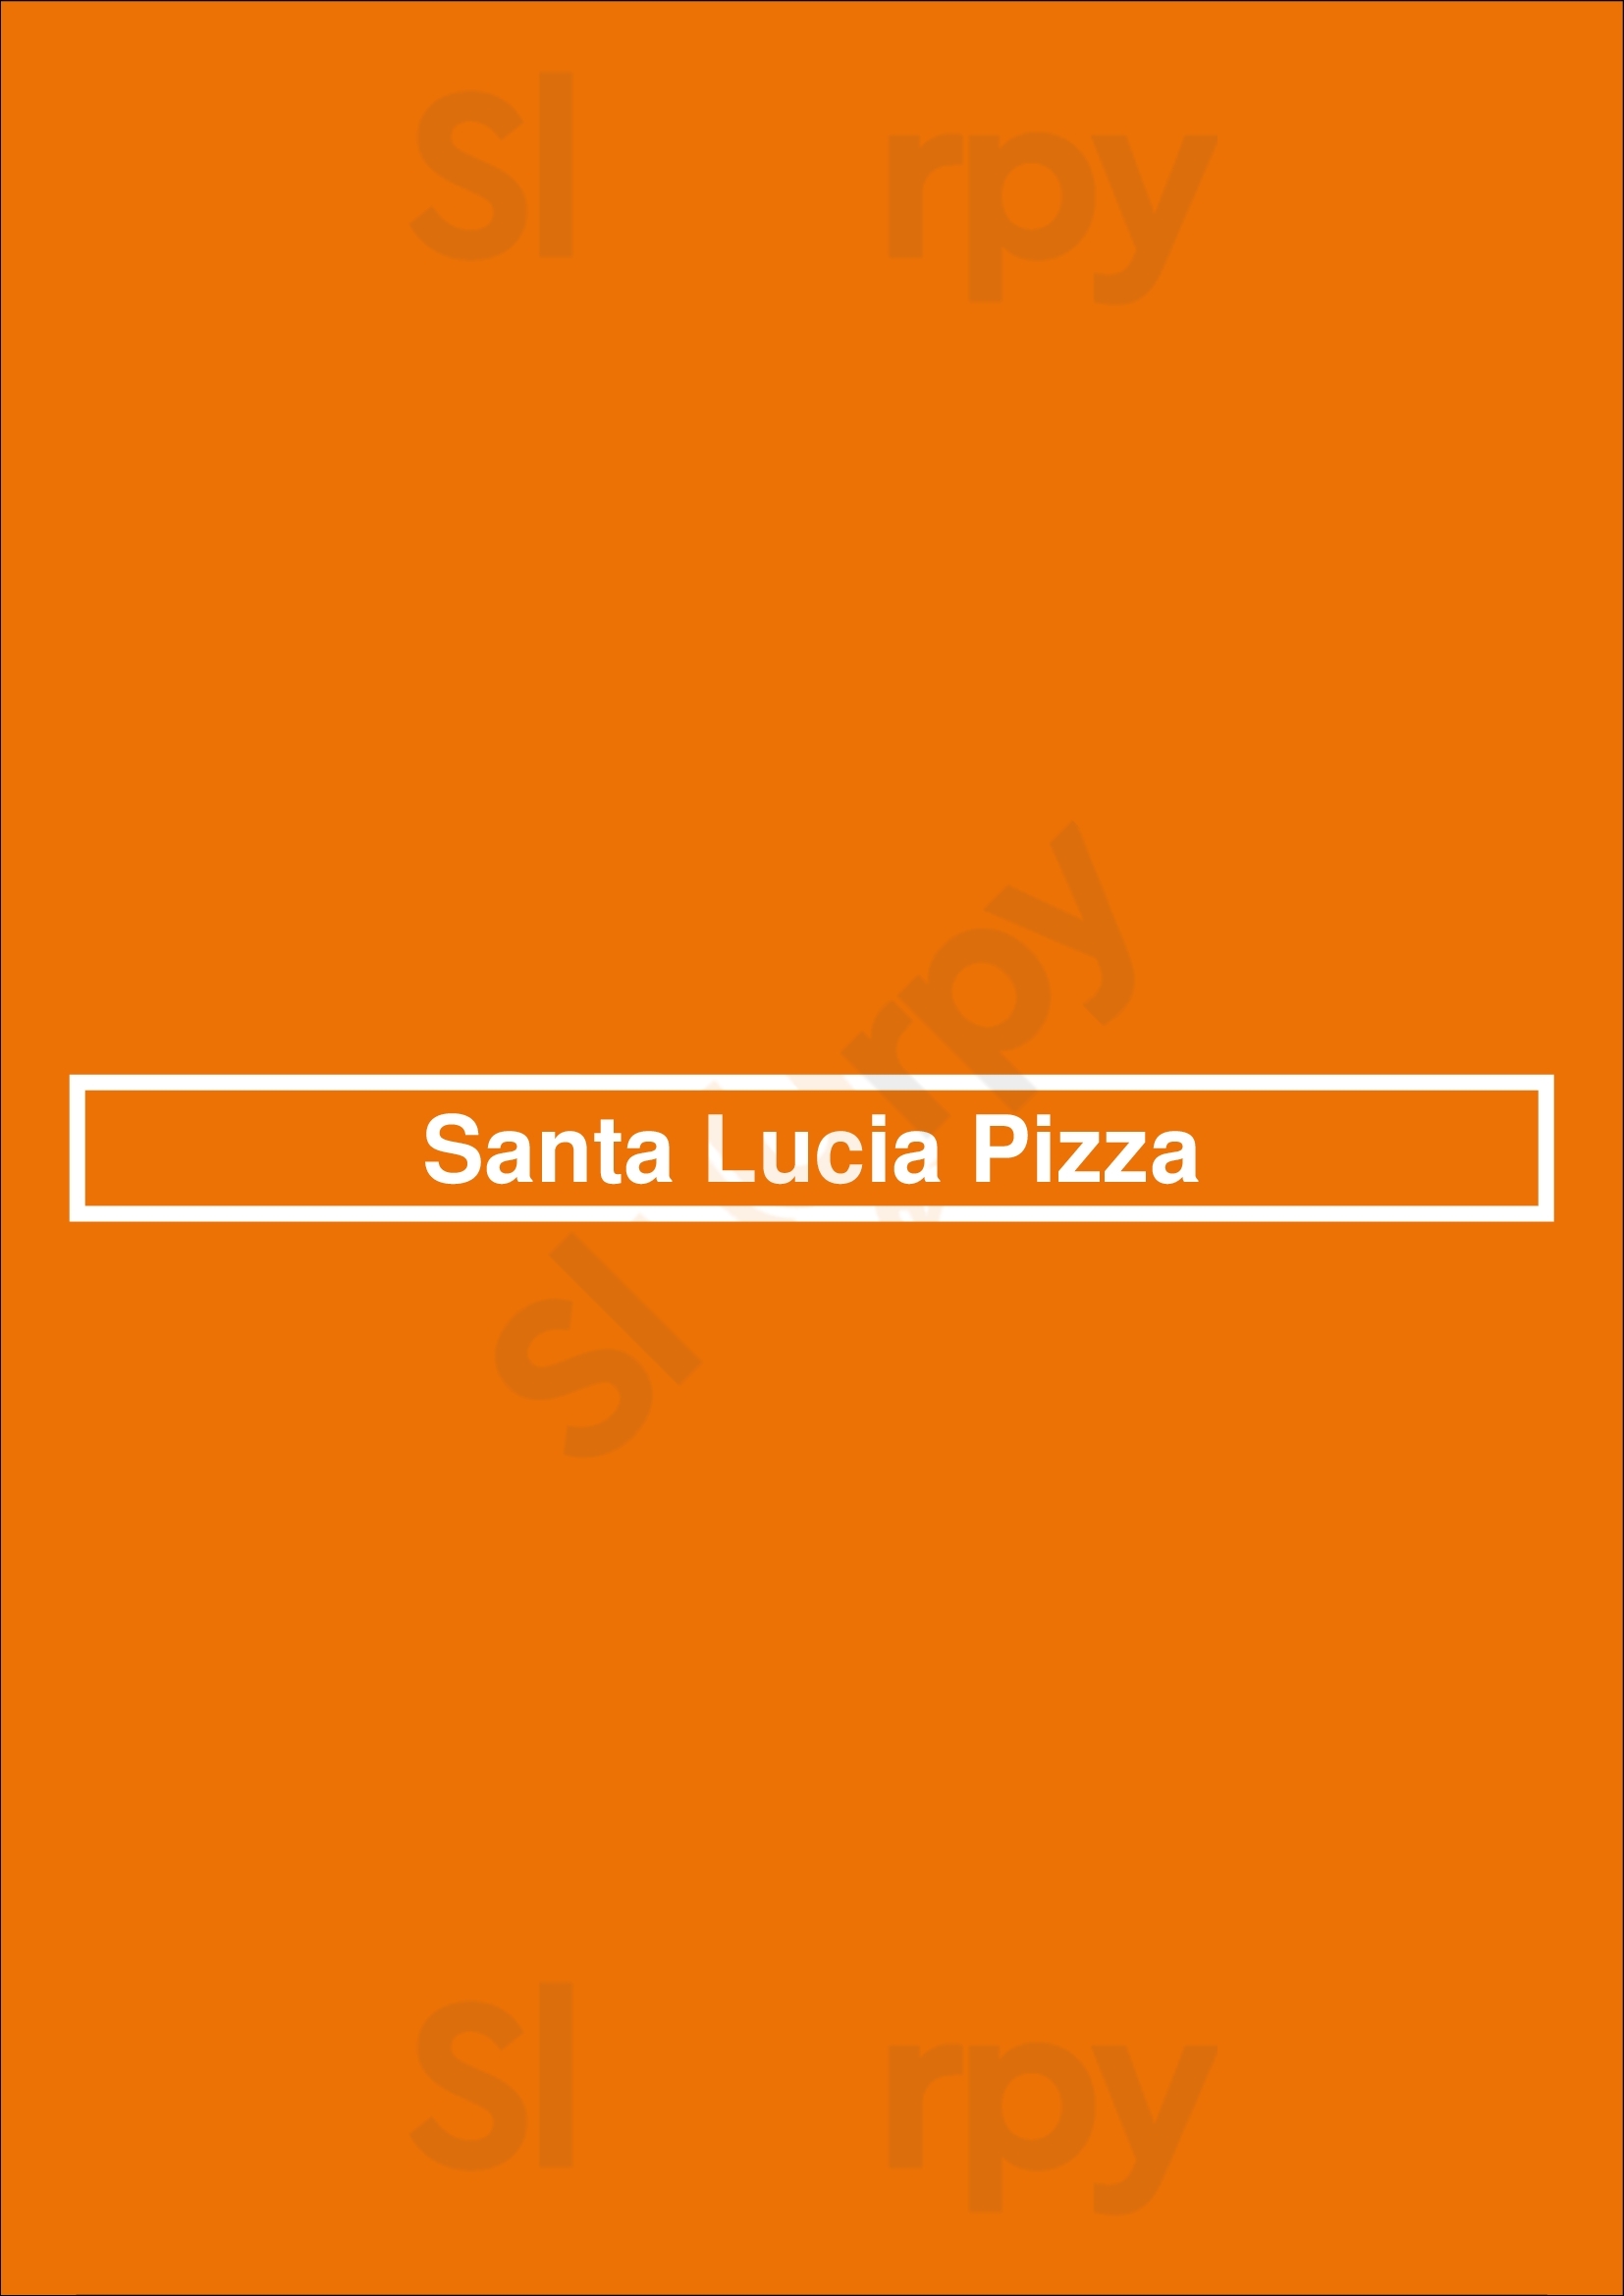 Santa Lucia Pizza Winnipeg Menu - 1